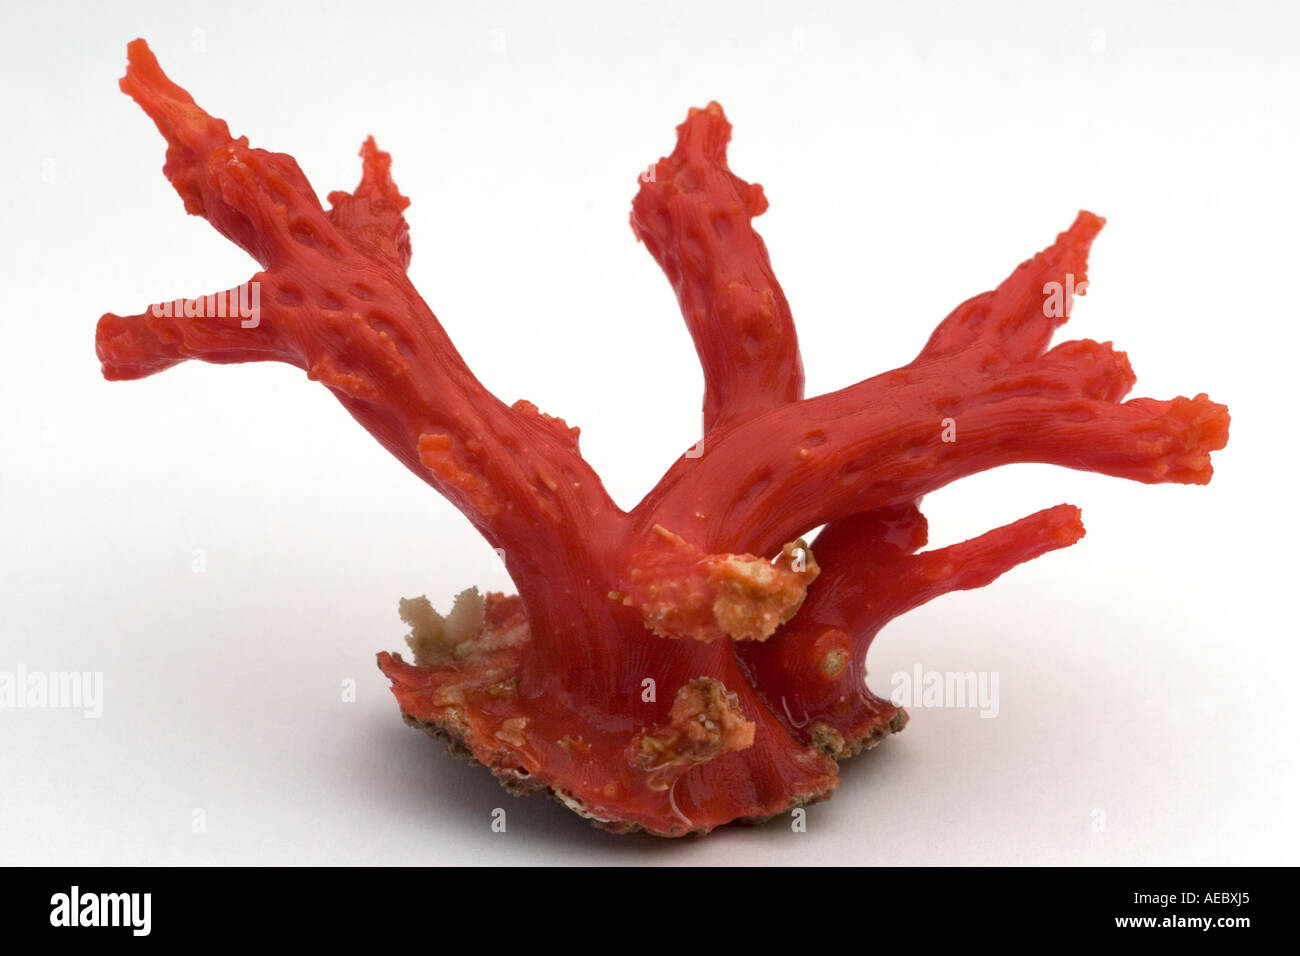 Méditerranée le corail rouge (Corallium rubrum) sur fond blanc. Corail rouge de Méditerranée (Corallium rubrum). Banque D'Images